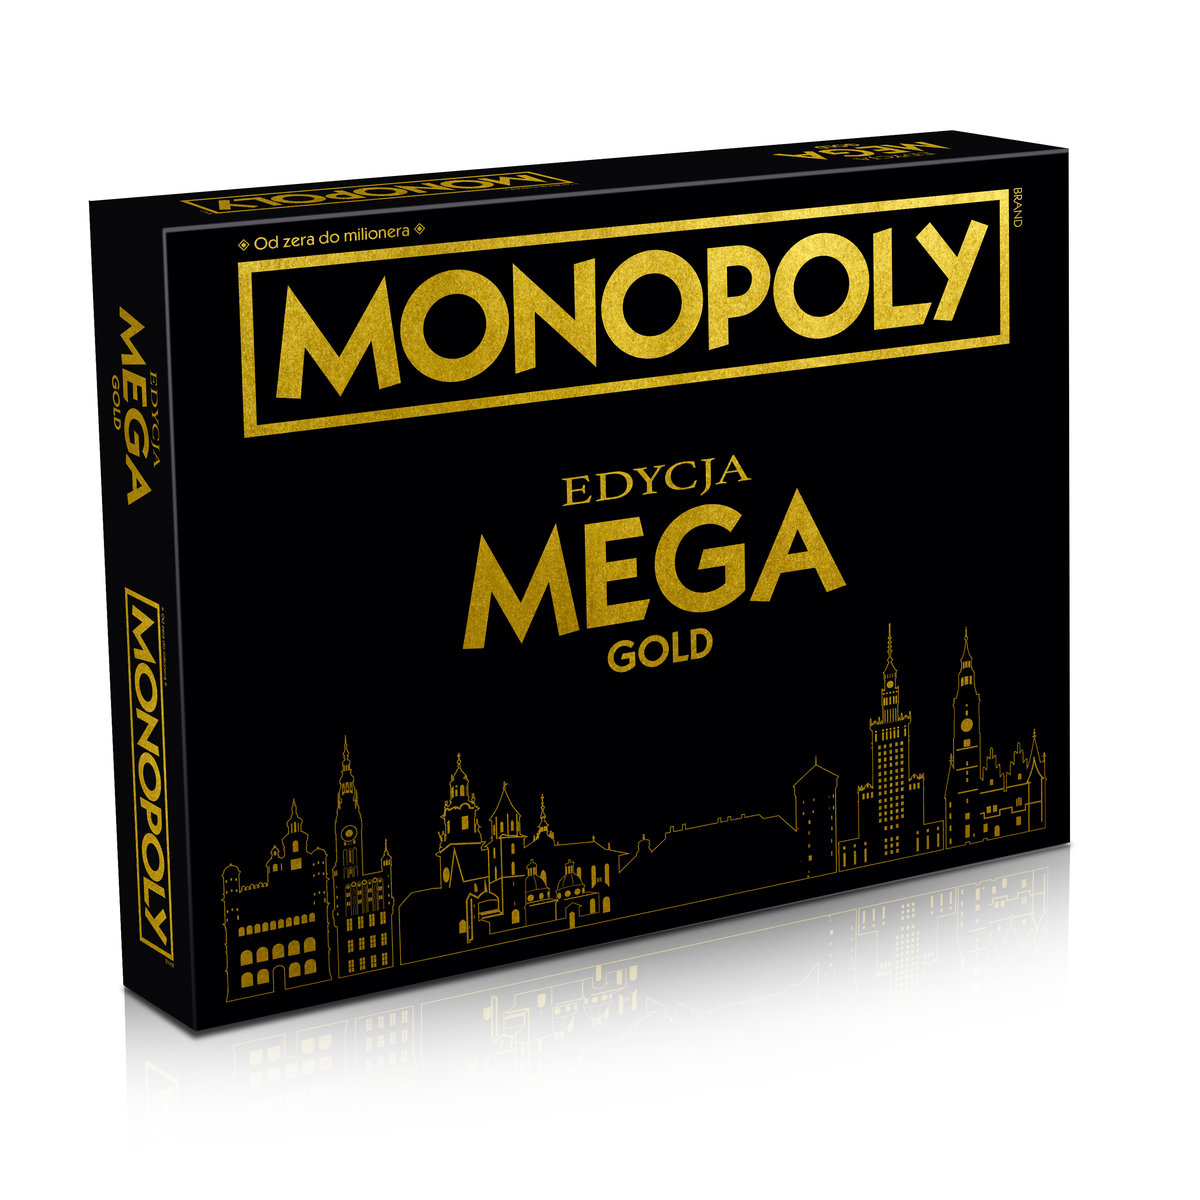 Monopoly, gra planszowa, Edycja Mega GOLD